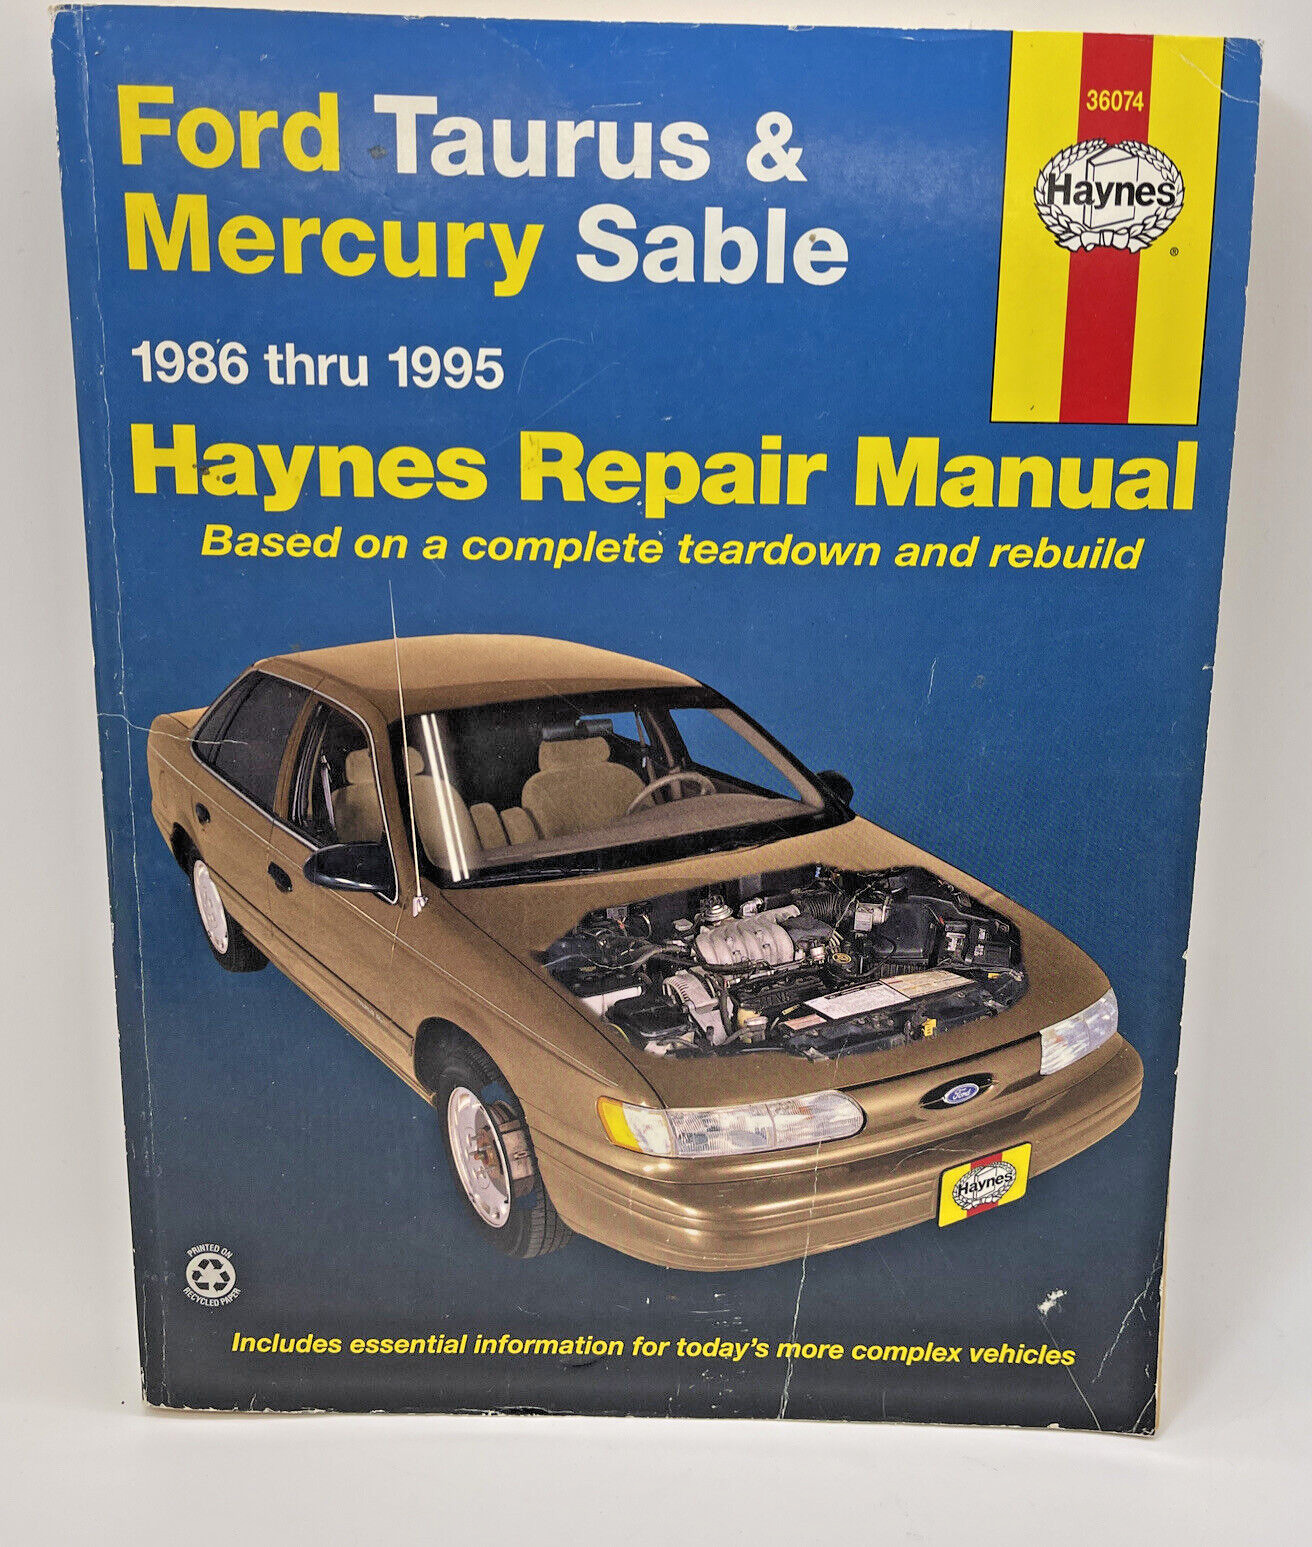 Ford Taurus & Mercury Sable 1986 - 1995 Haynes Car Repair Manual